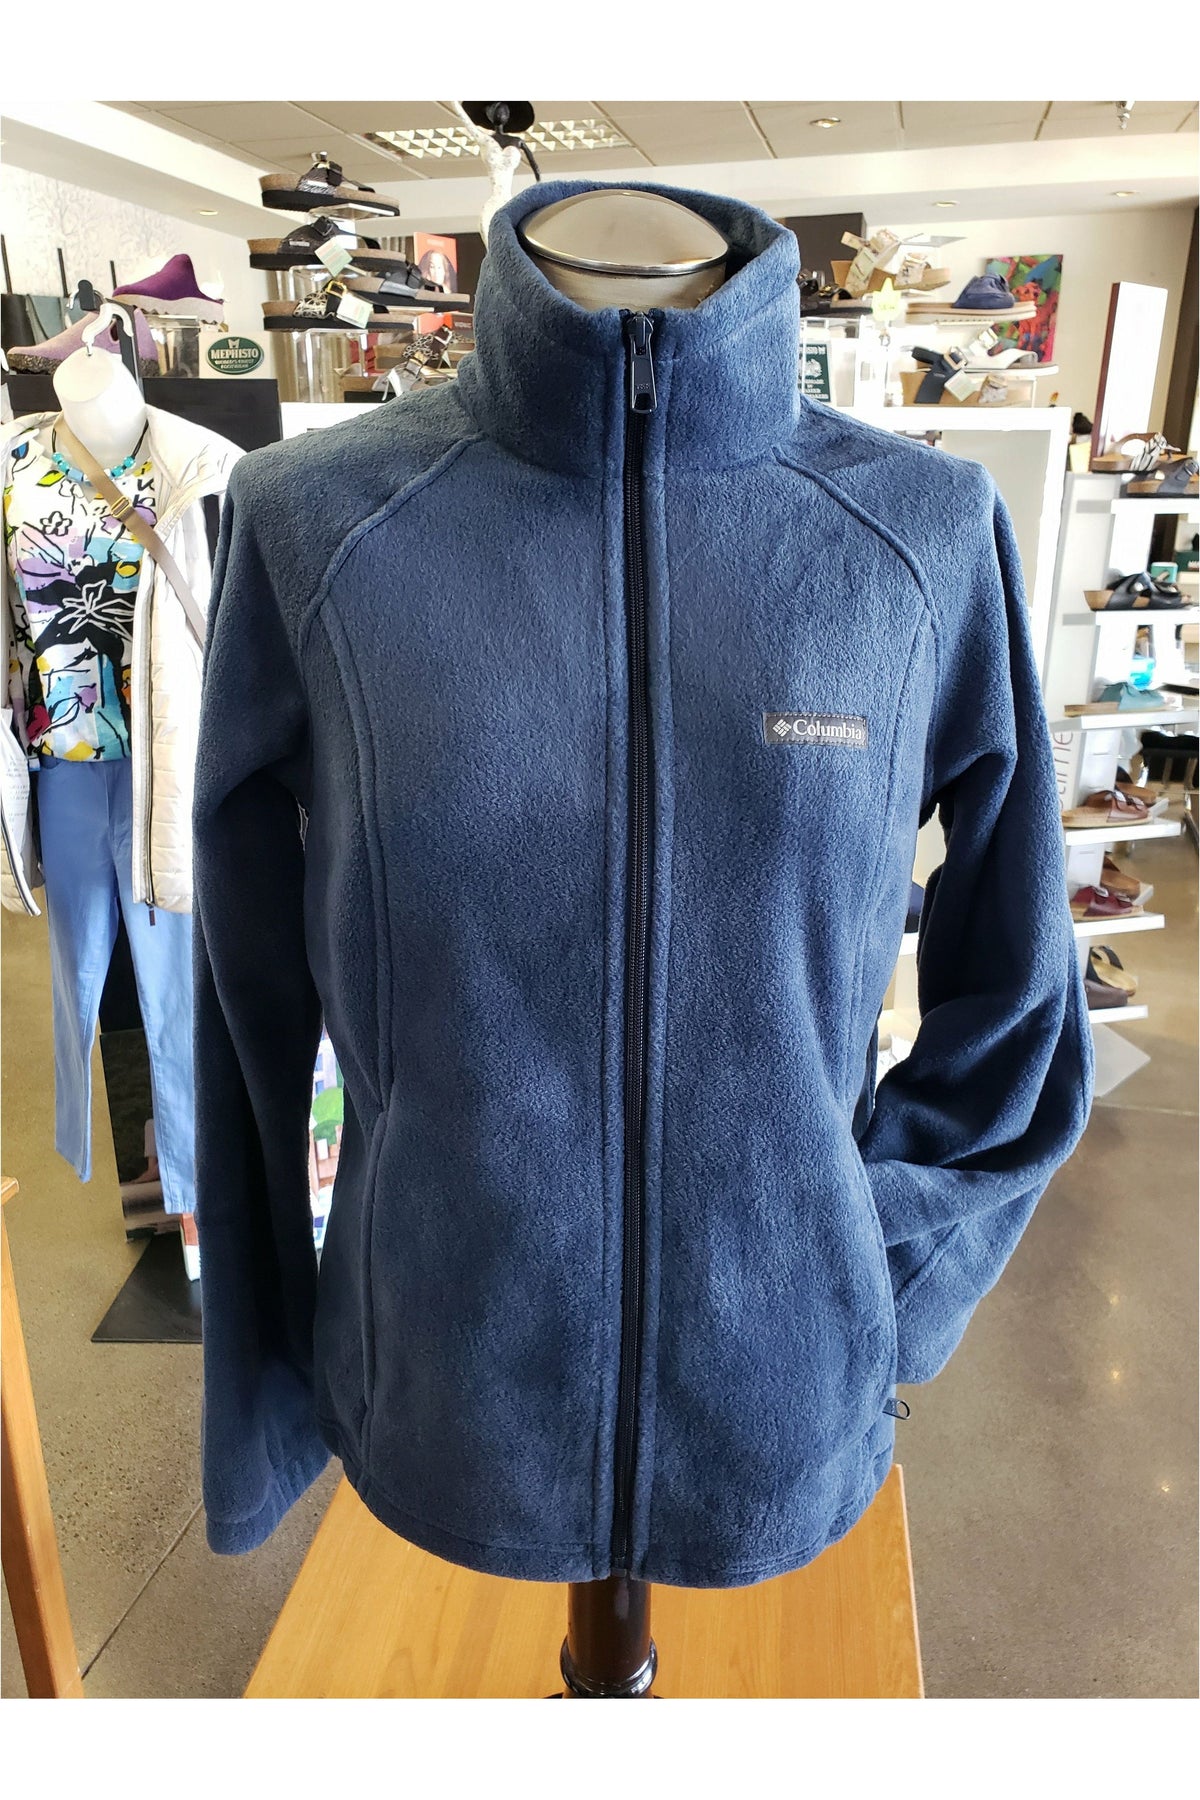 Columbia Benton Springs Full Zip Fleece Jacket - Style 1372111425, front